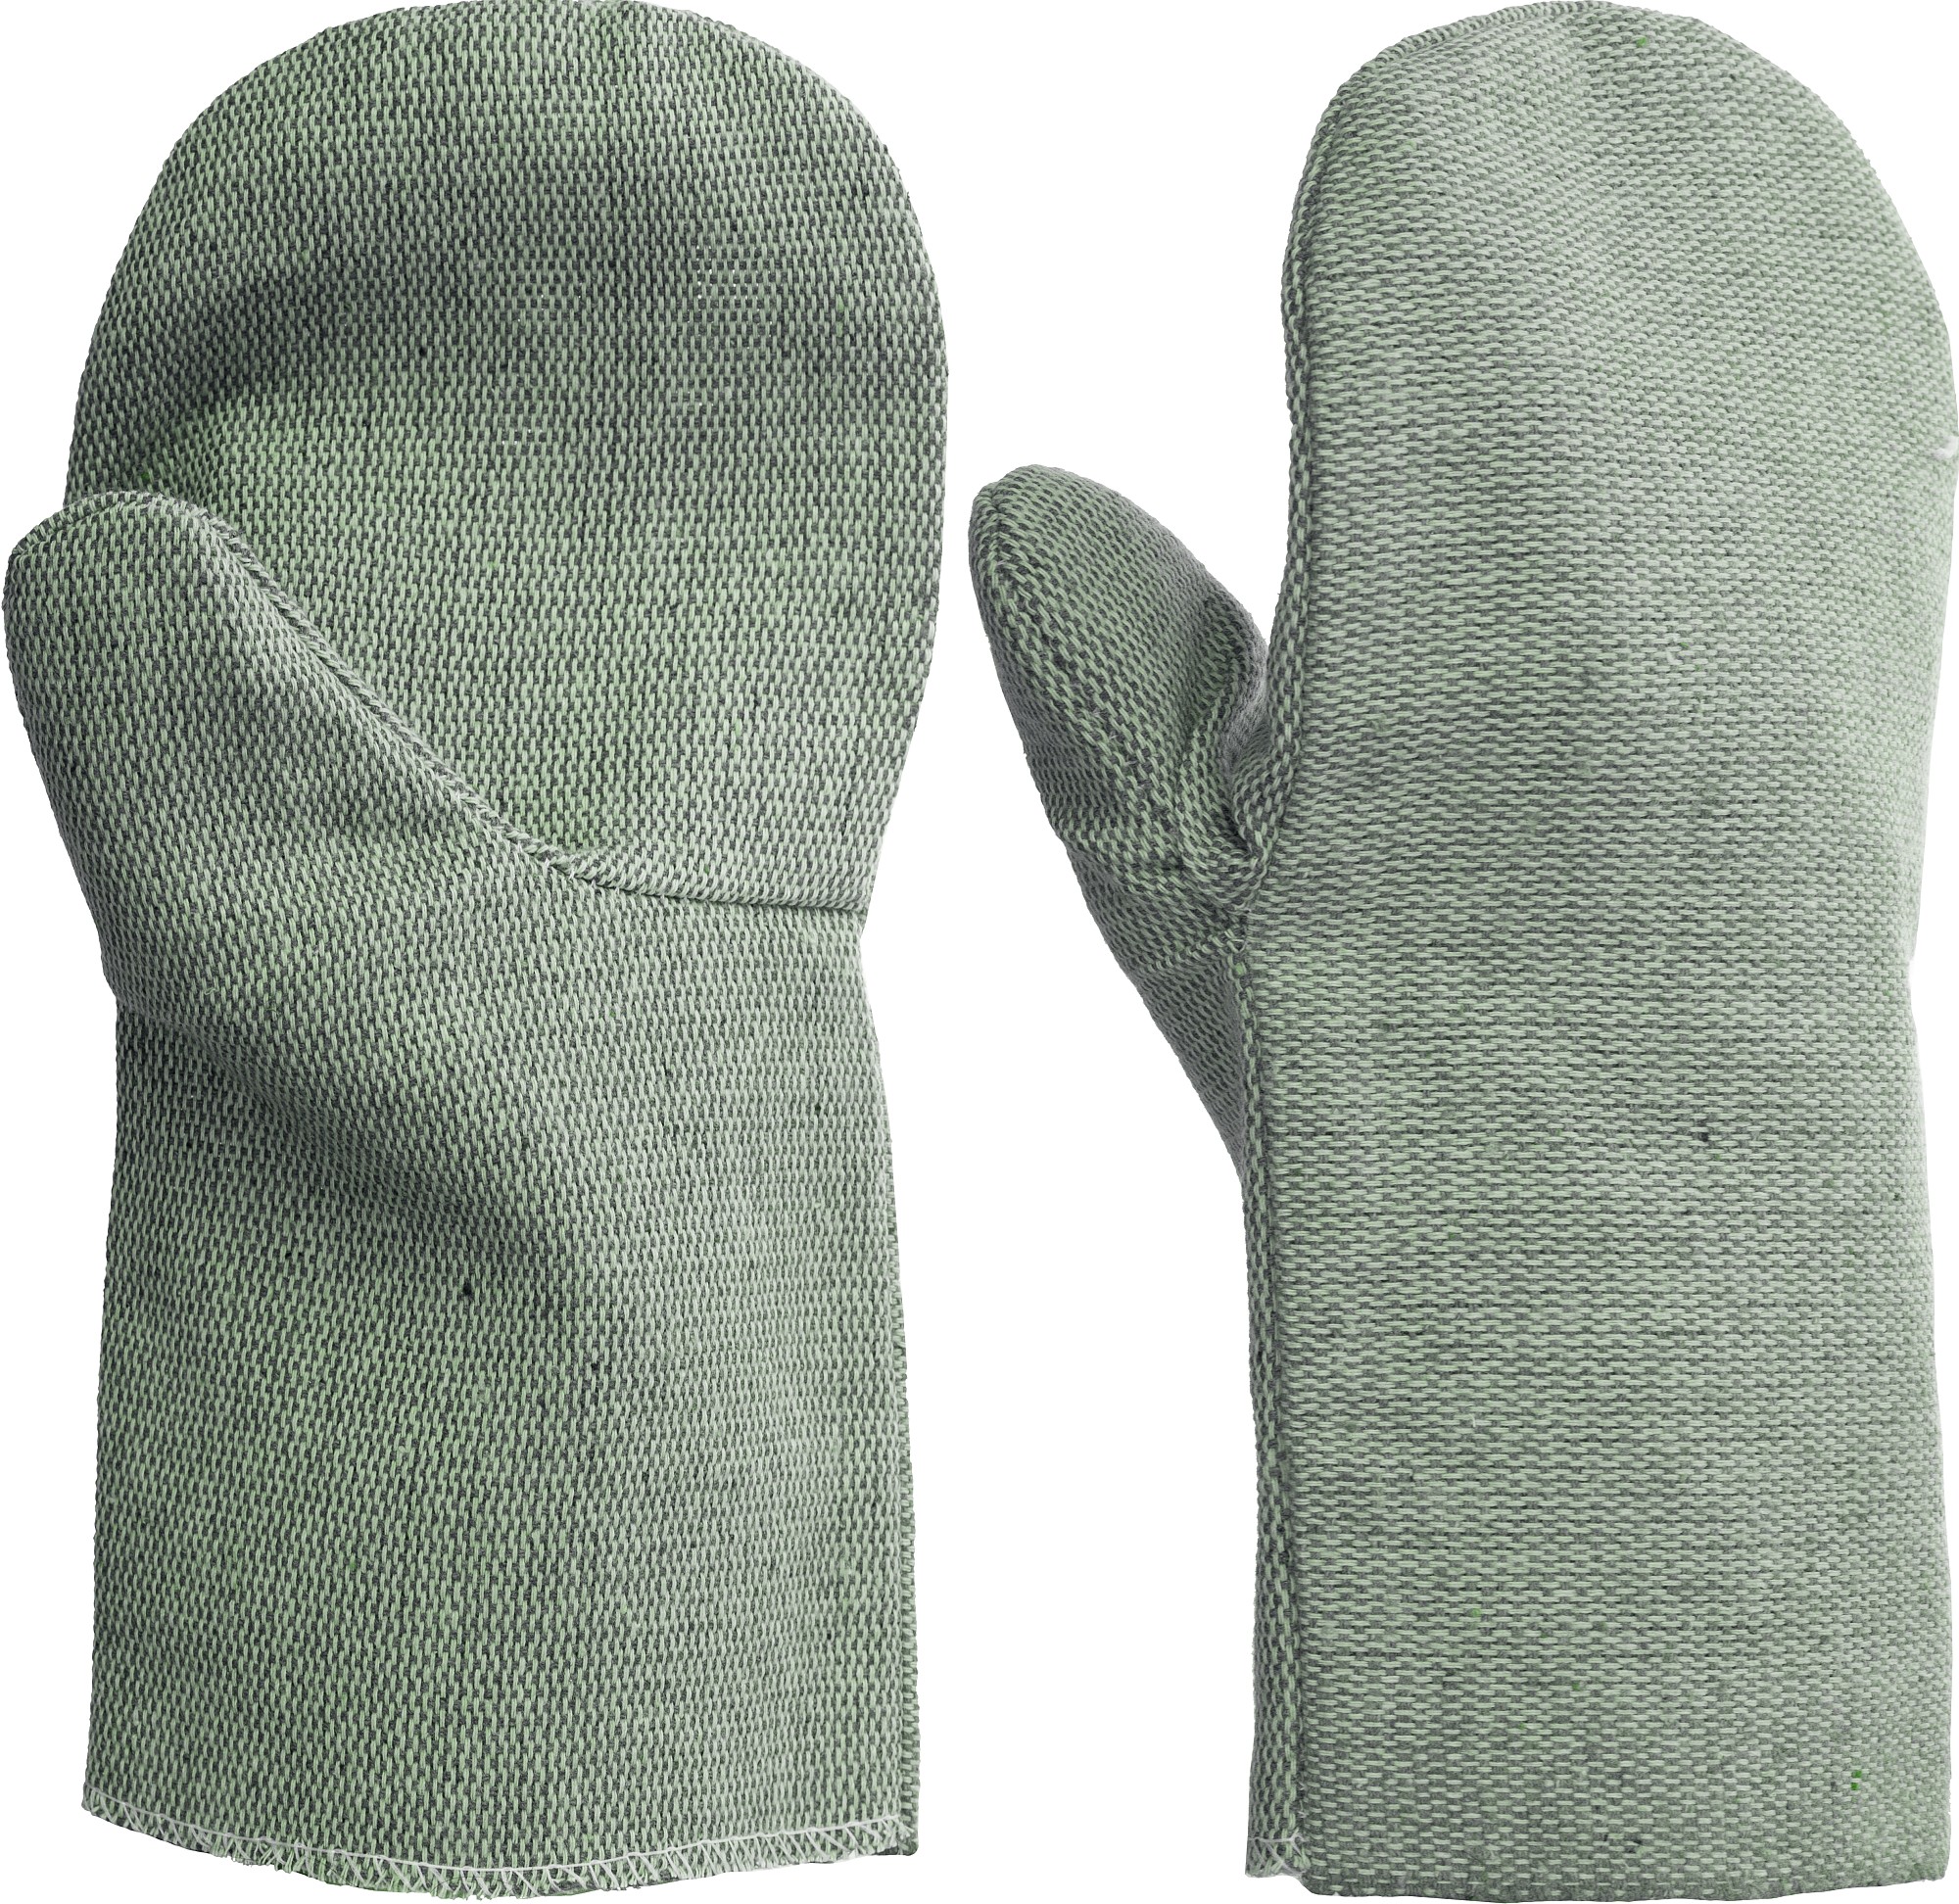 СИБИН от мех. воздействий, высокопрочные, размер XL, брезентовые рукавицы (11422)